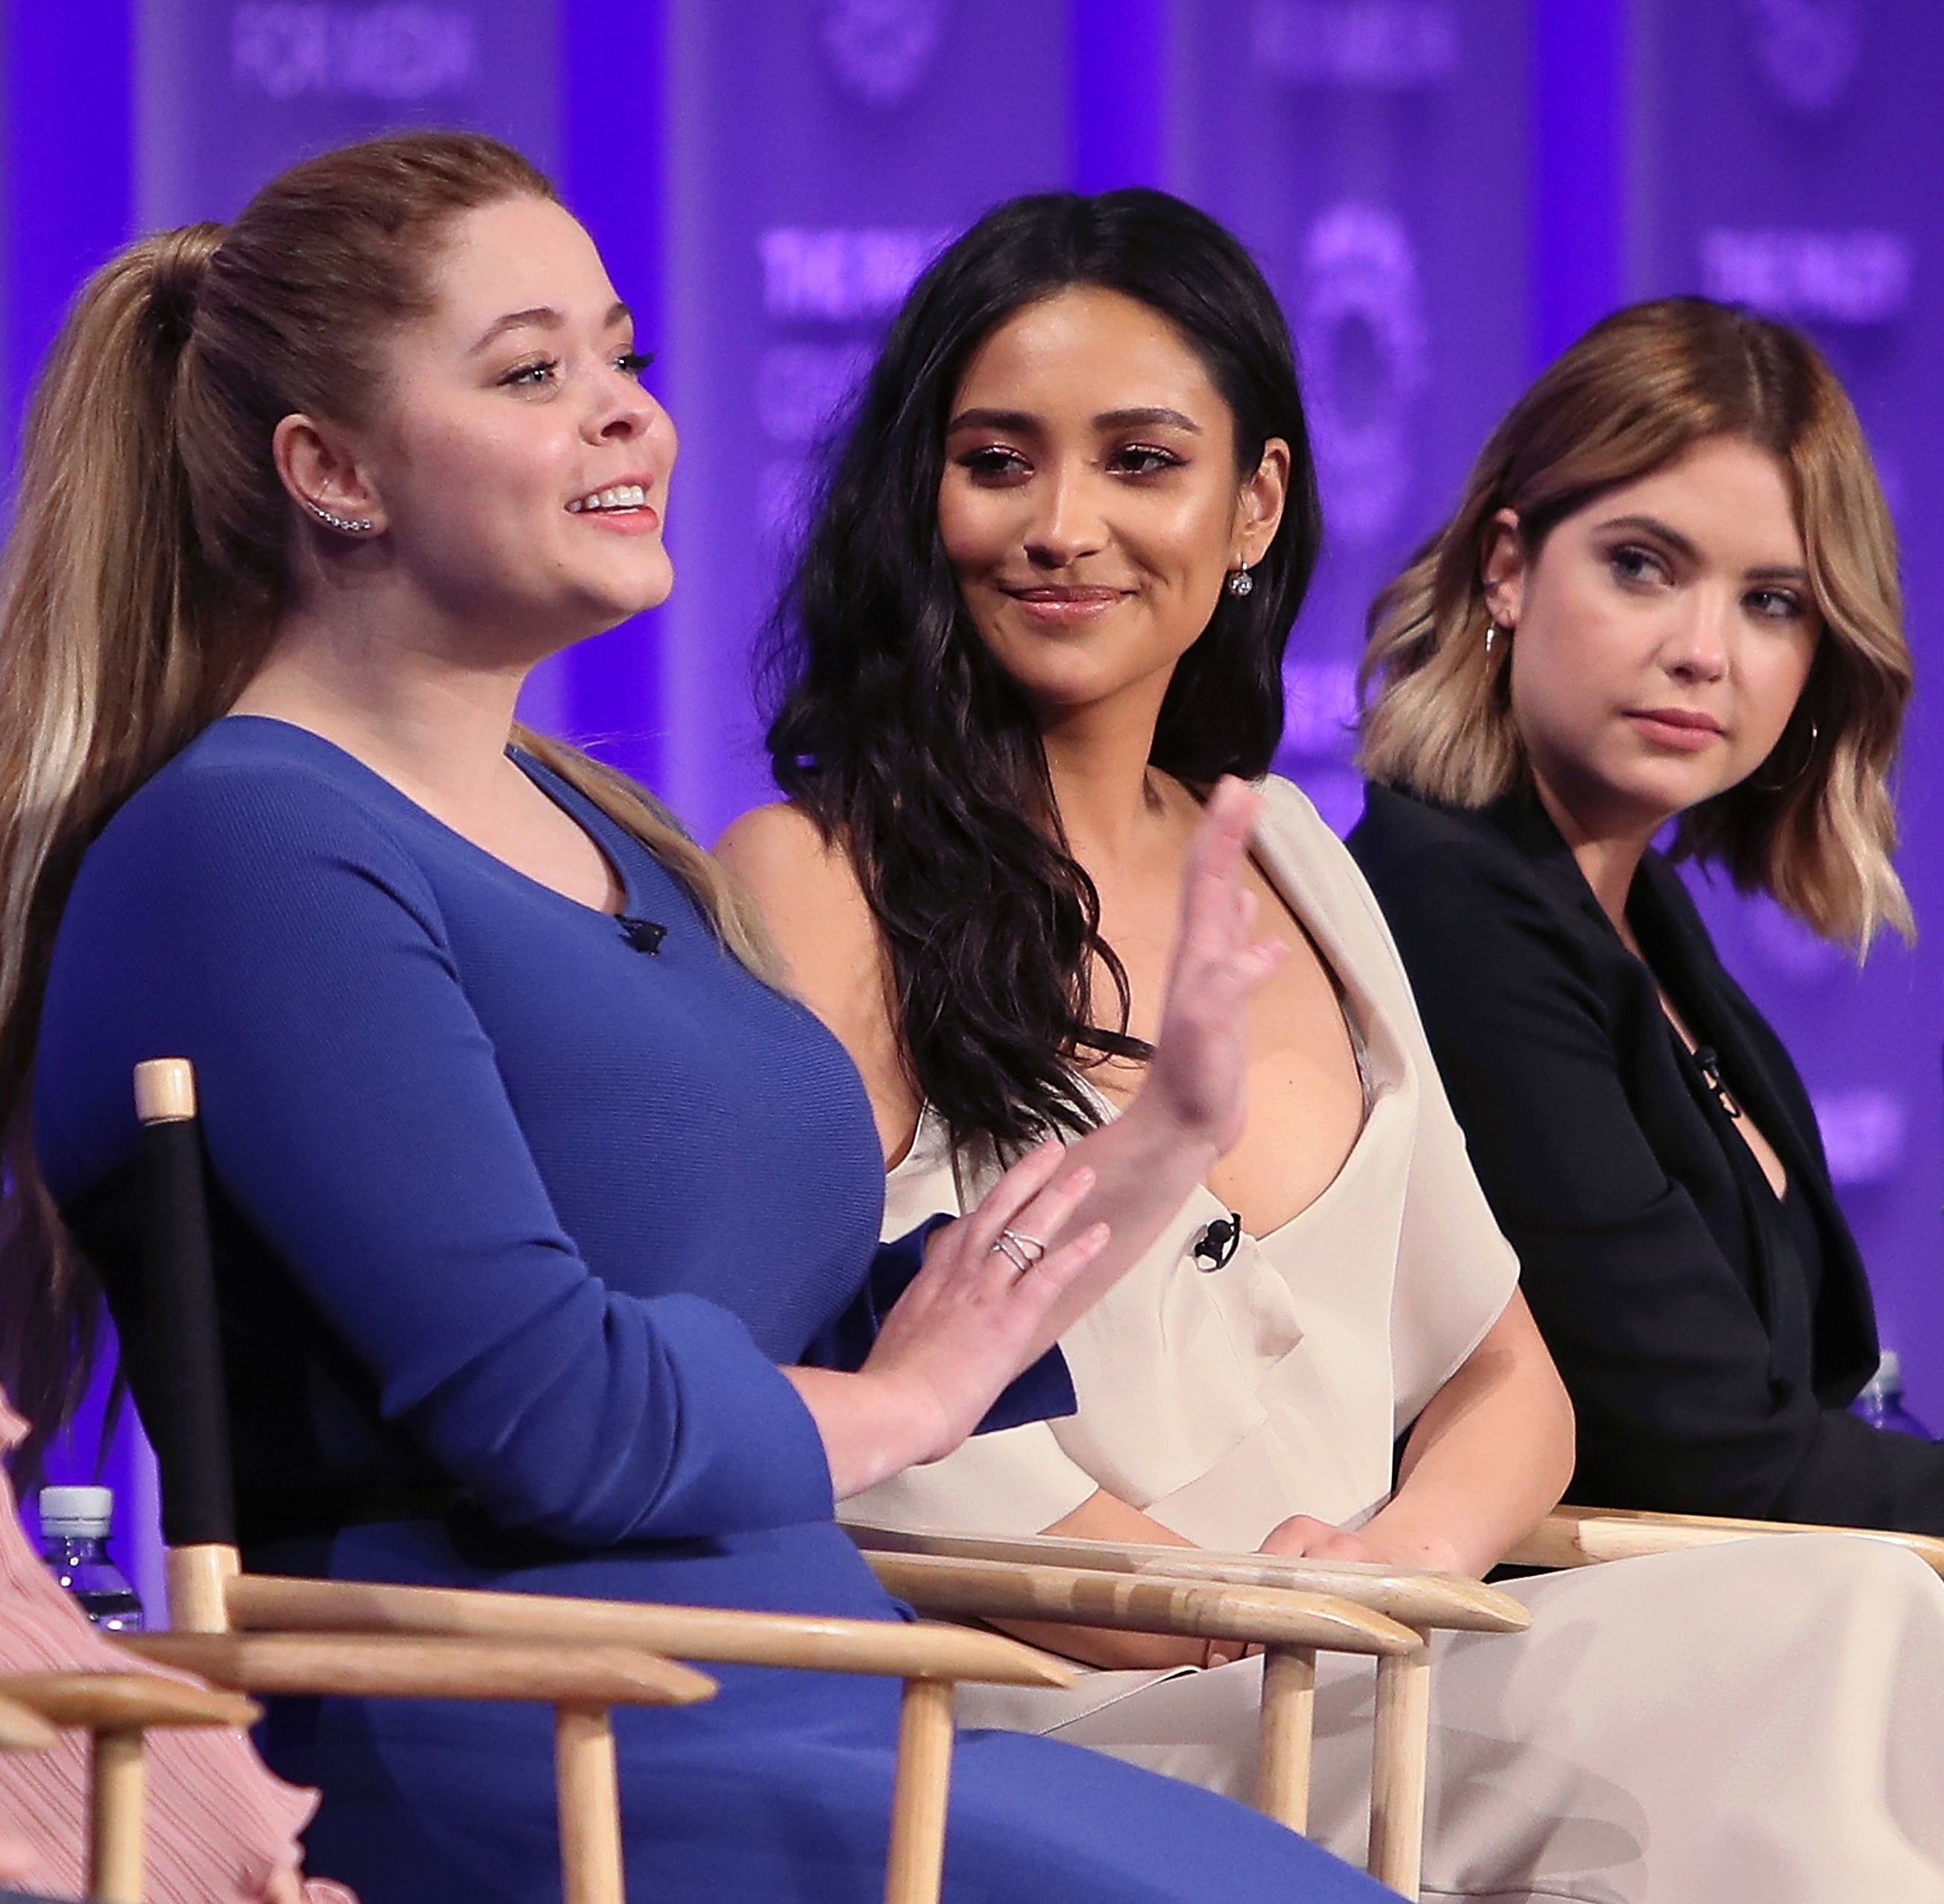 Sasha on a panel with others